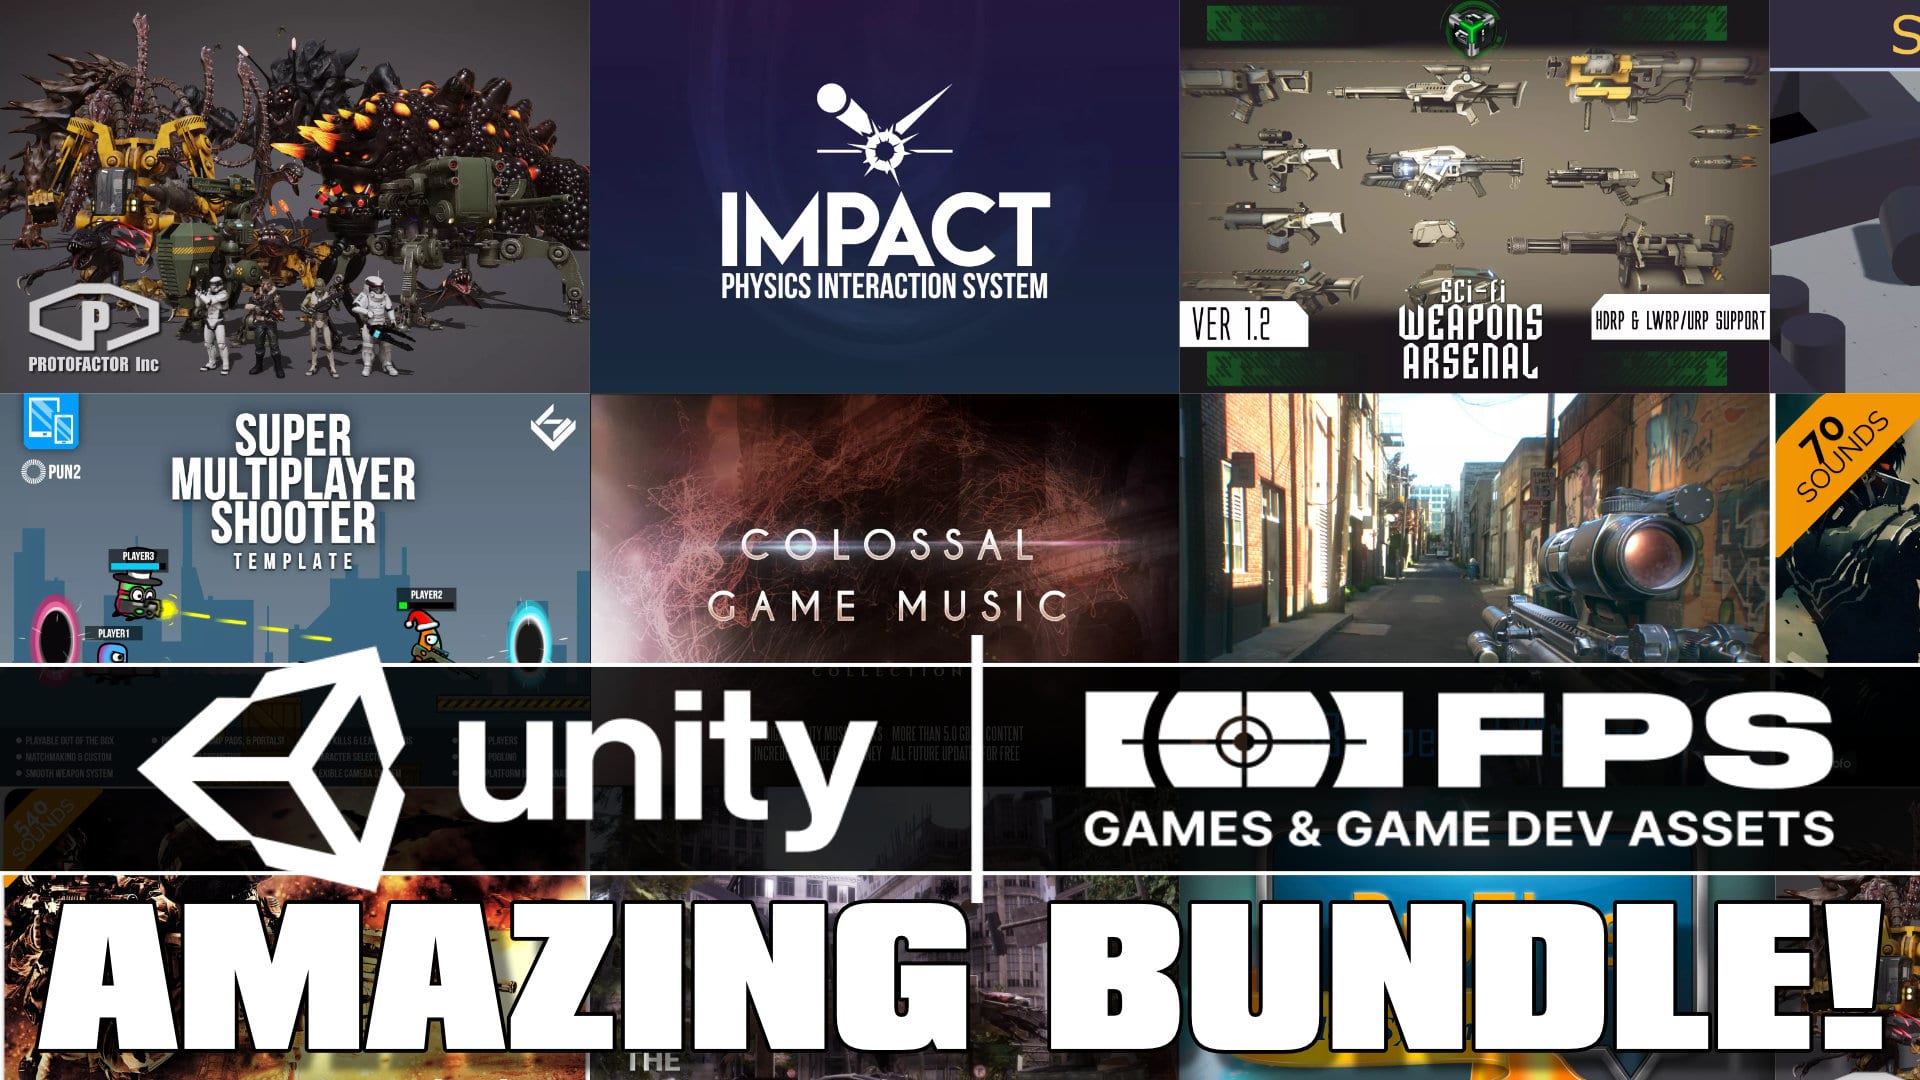 Unity FPS Games & GameDev Assets Humble Bundle